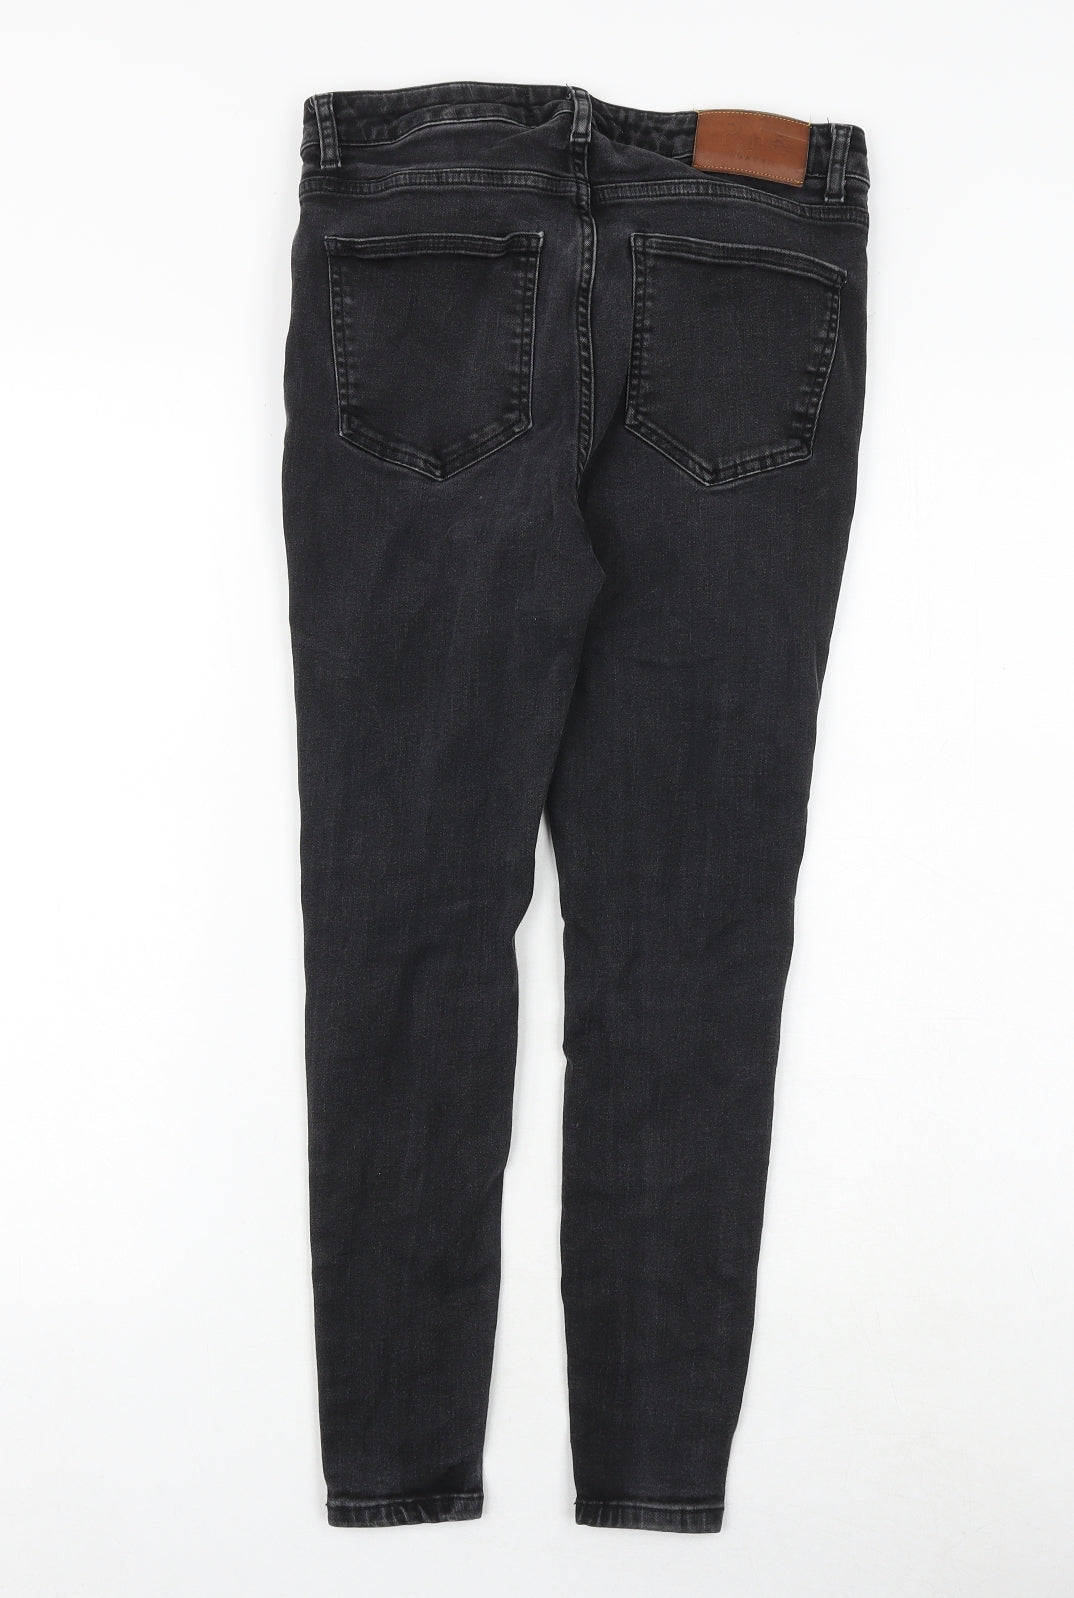 Pre London Mens Black Cotton Skinny Jeans Size 30 in Slim Zip